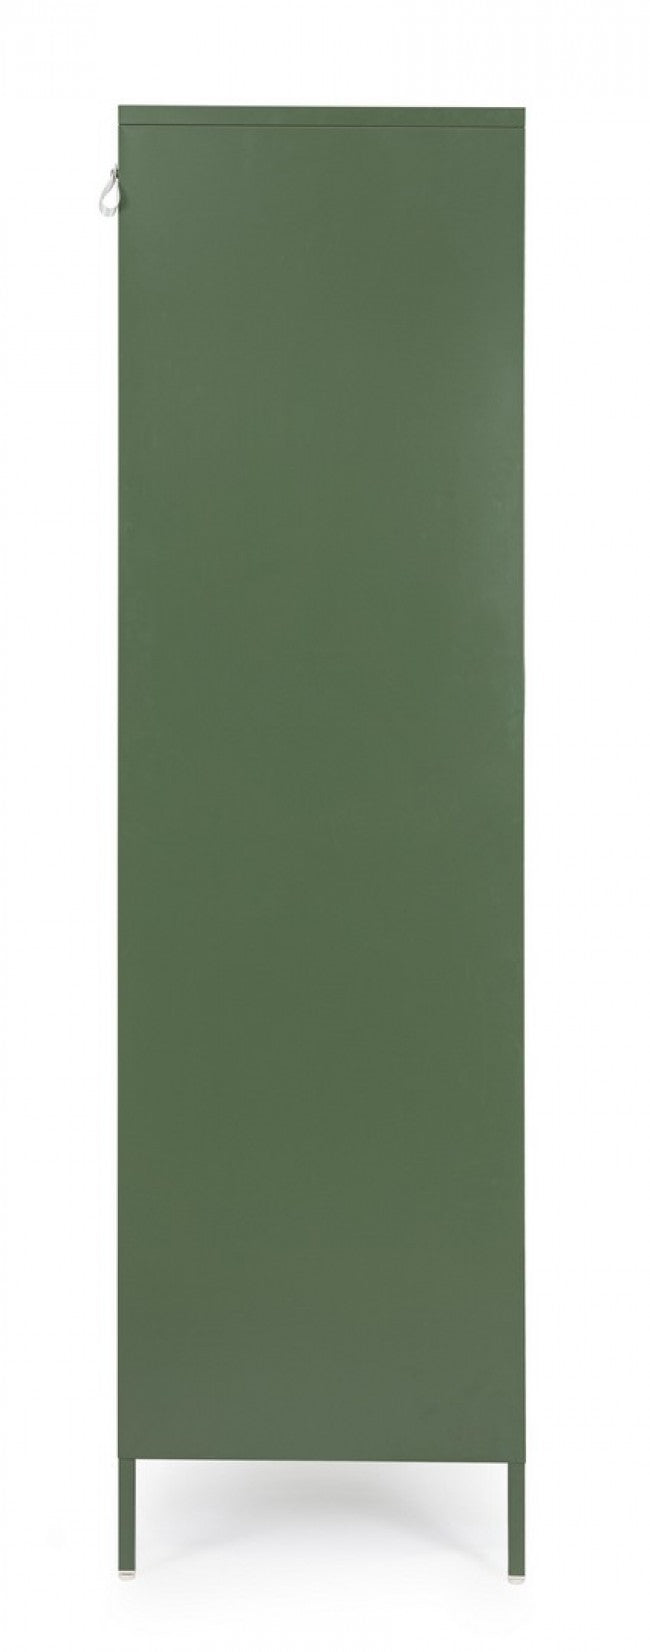 Armadio 2 Ante 50x80x185 cm Cambridge in Acciaio Verde-4